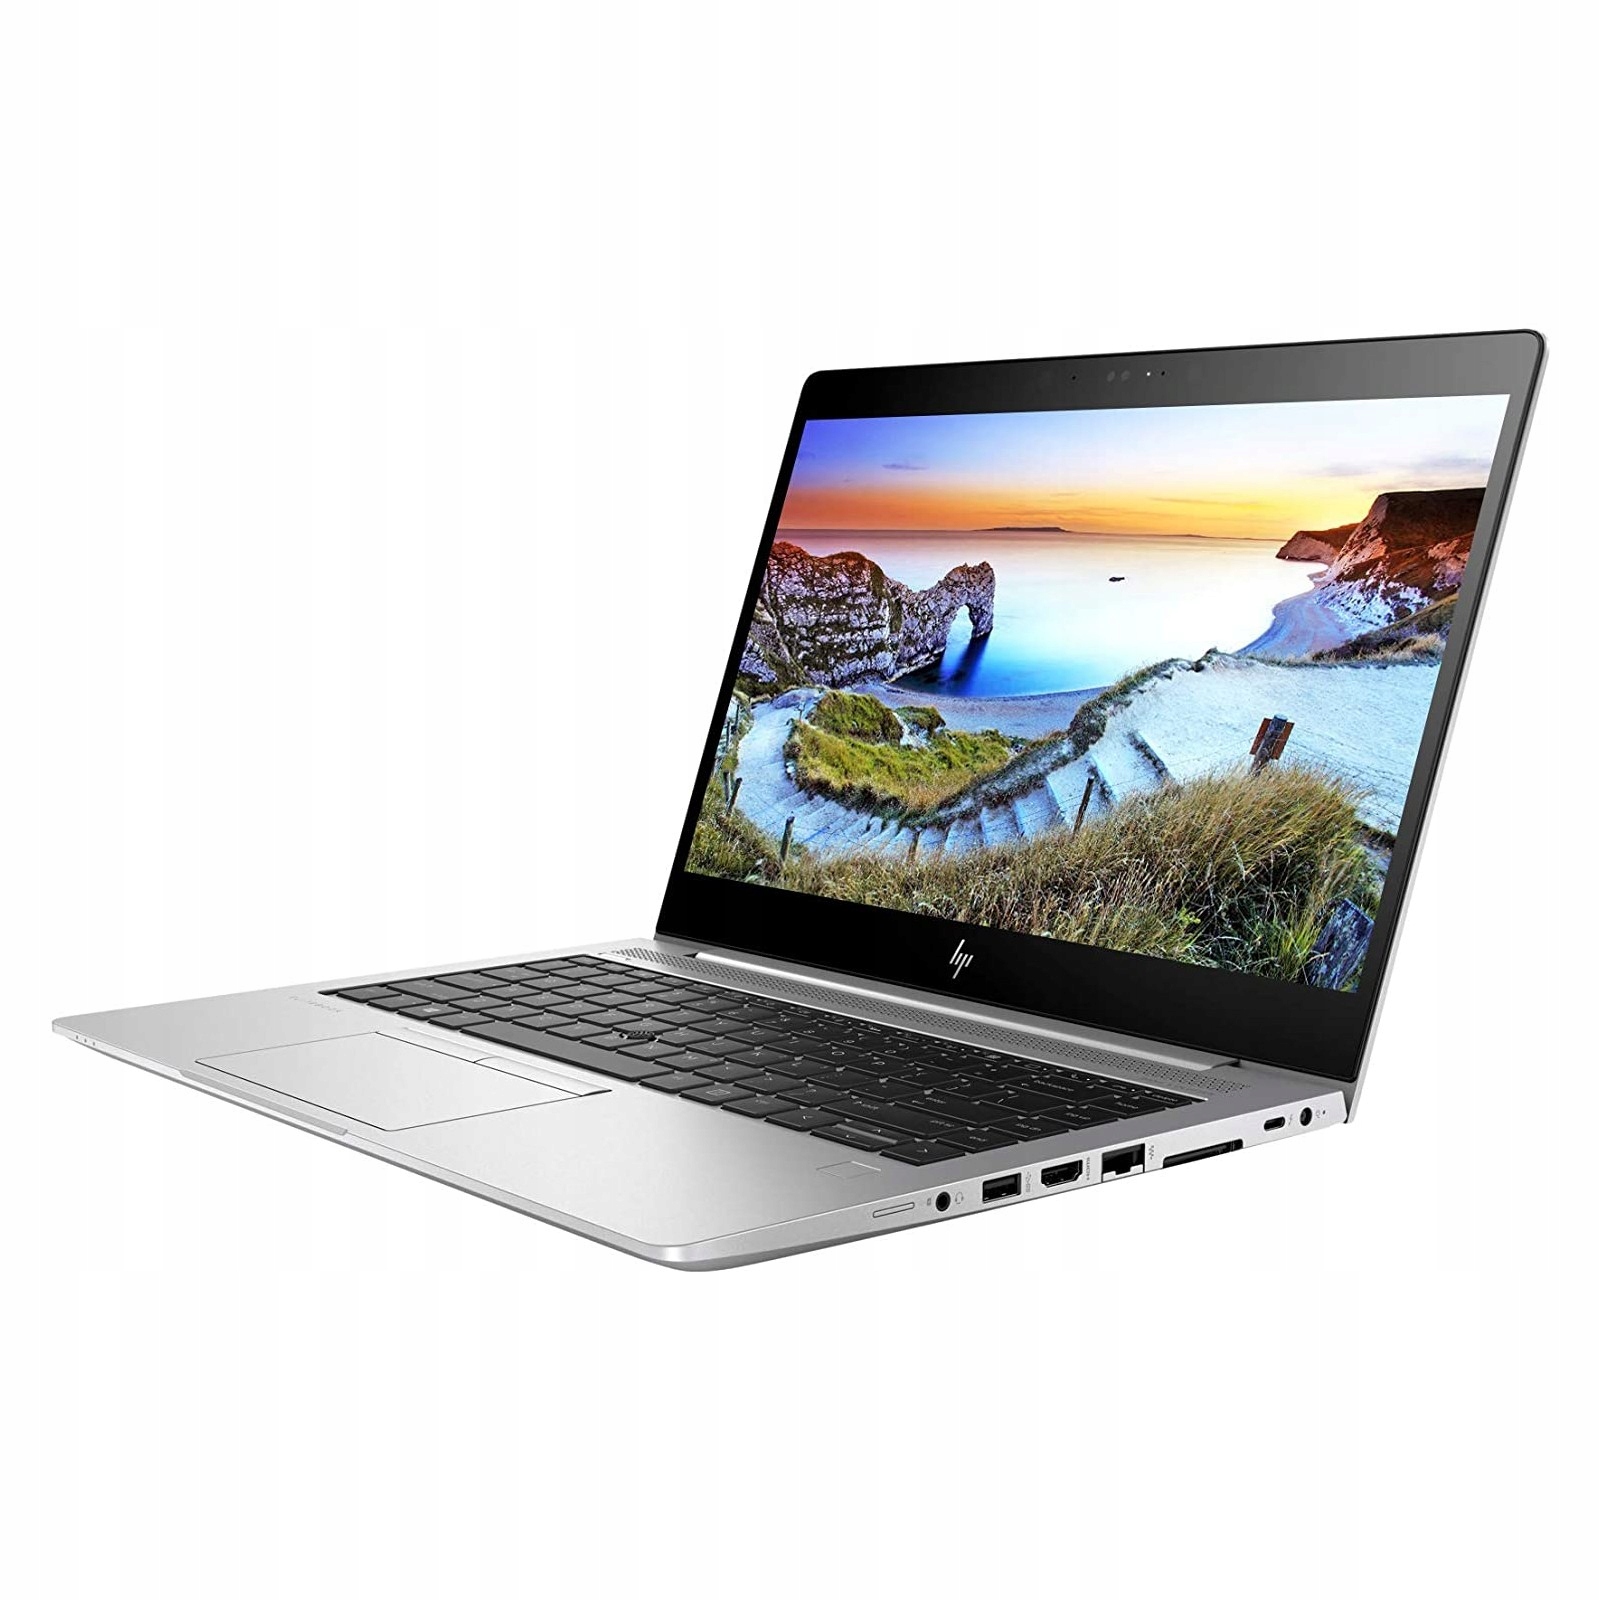 HP EliteBook 840 G6 Core i5-8365U I 8Go I 256Go NVMe I 14″ Full HD